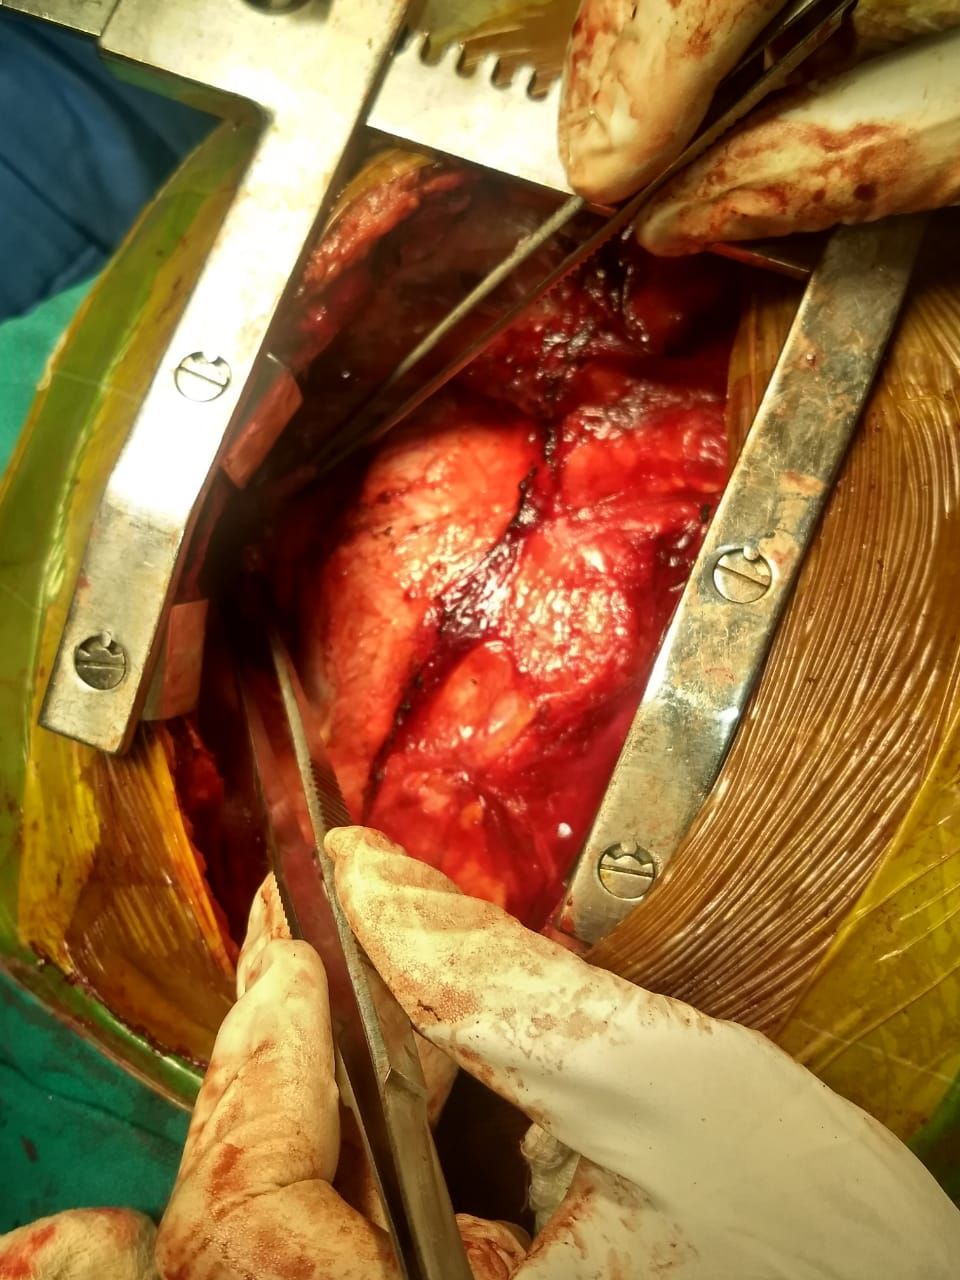 Pericardectomy